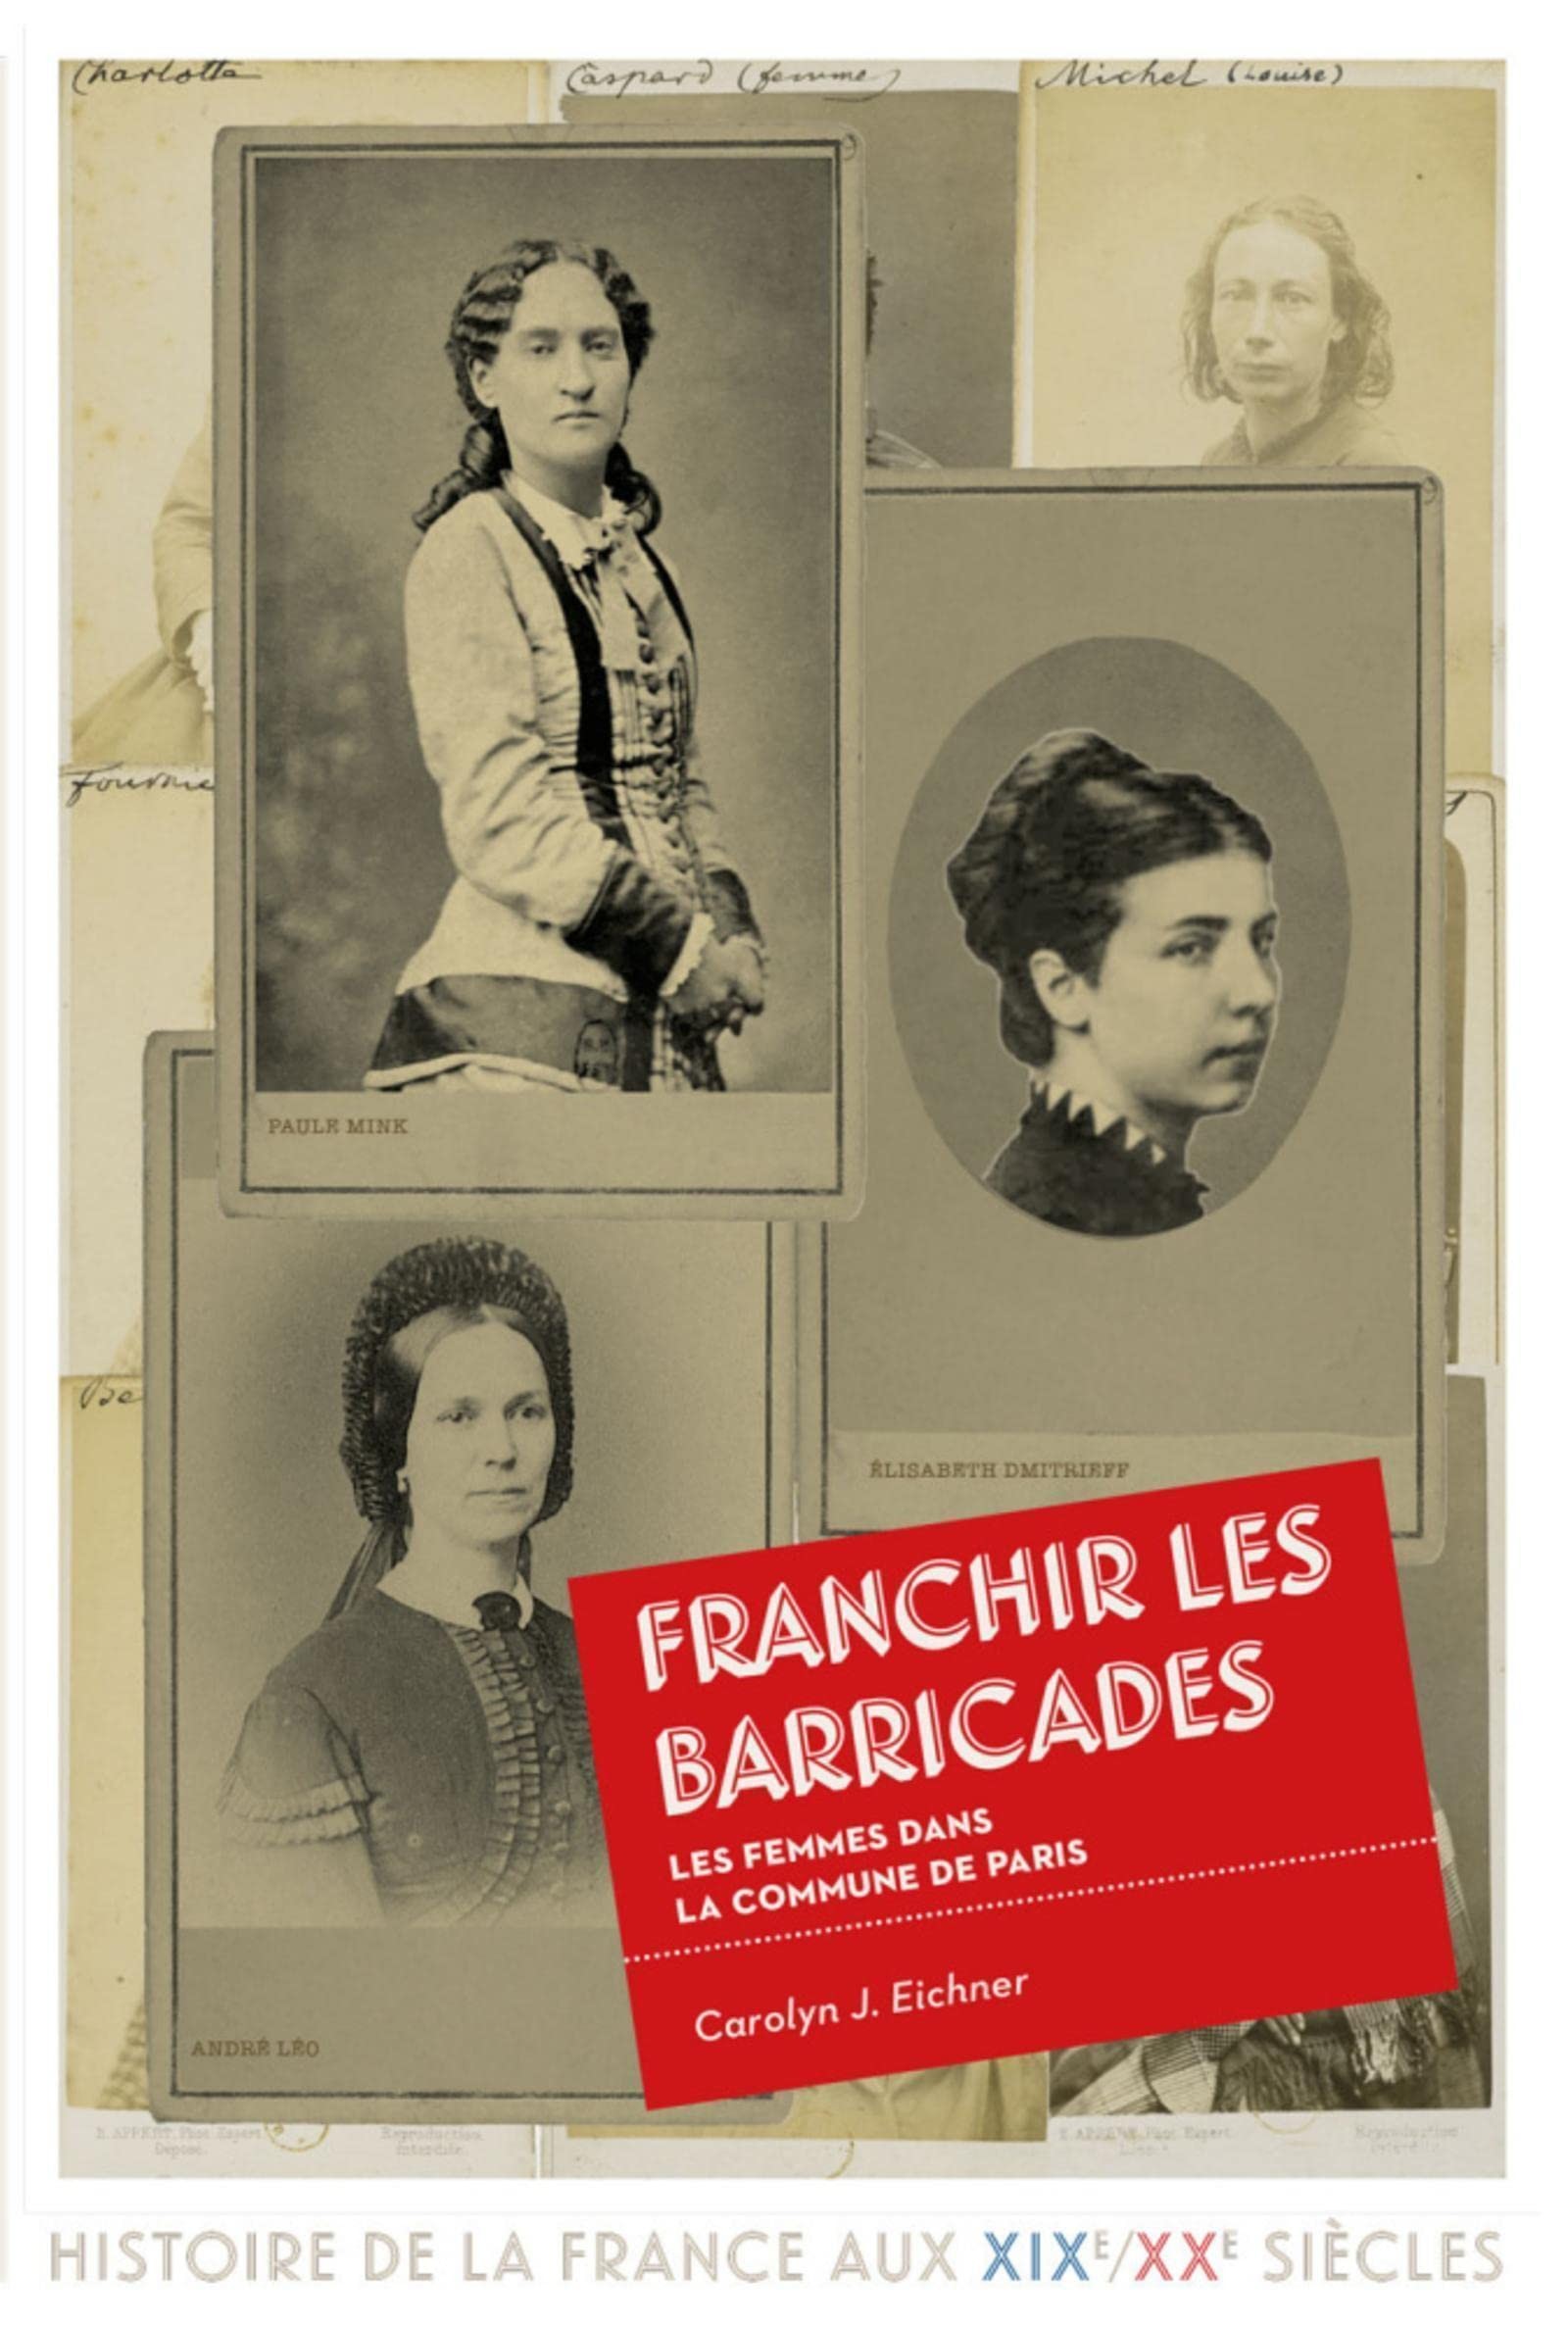 Carolyn J. Eichner, Franchir les barricades. Les femmes dans la Commune de Paris, Éd. de la Sorbonne 2020